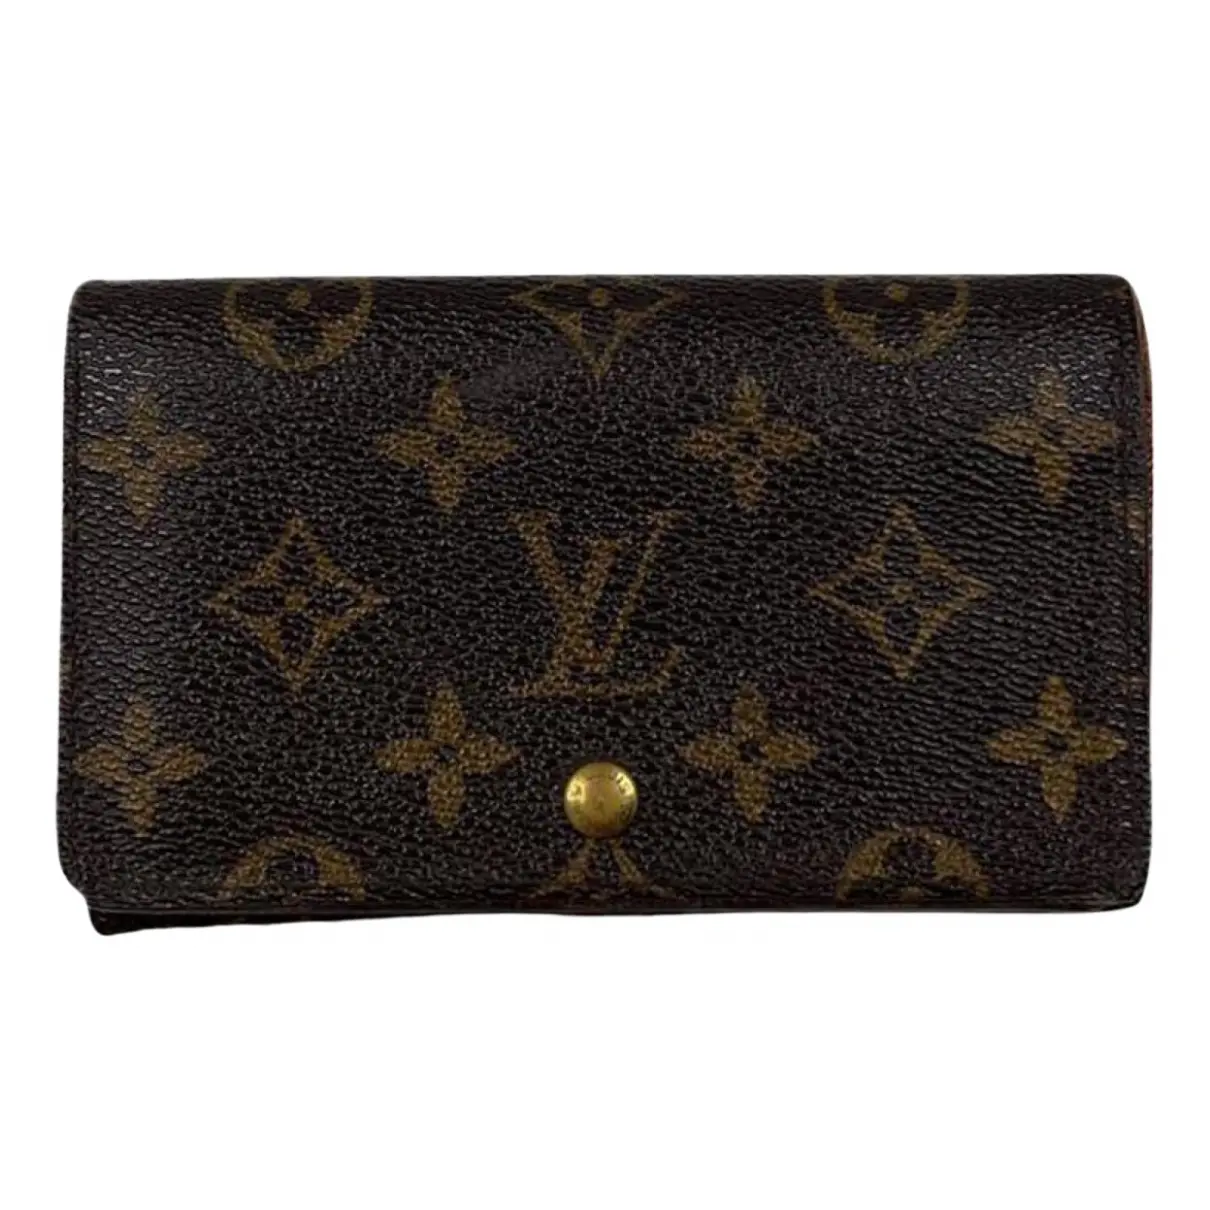 Leather wallet Louis Vuitton - Vintage